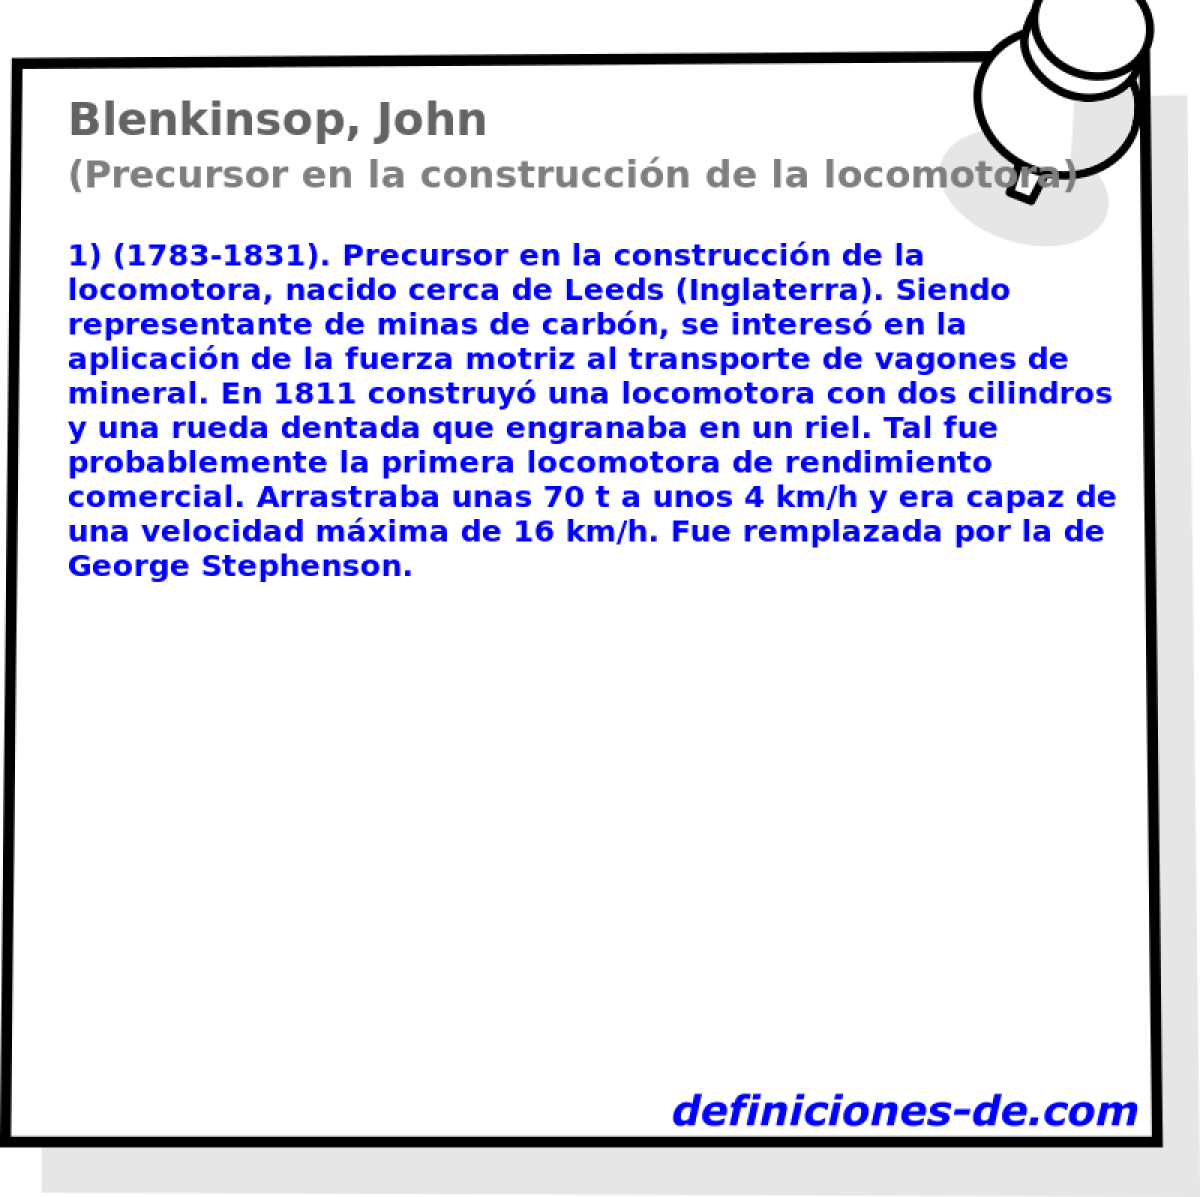 Blenkinsop, John (Precursor en la construccin de la locomotora)